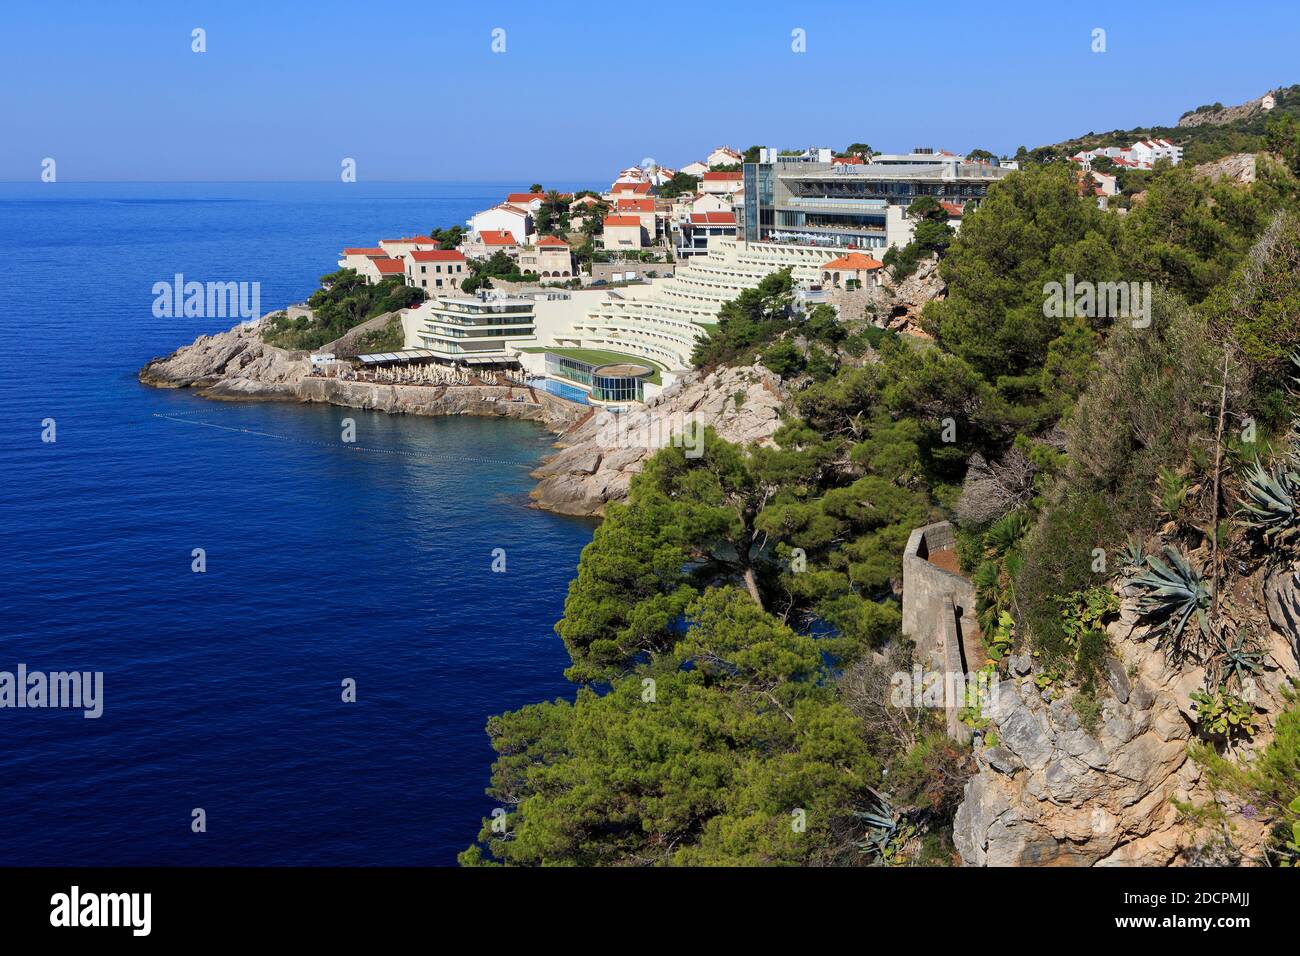 Panoramablick über das 5 Sterne Boutique Hotel Bellevue und den Strand an der Miramare Bucht in Dubrovnik, Kroatien Stockfoto